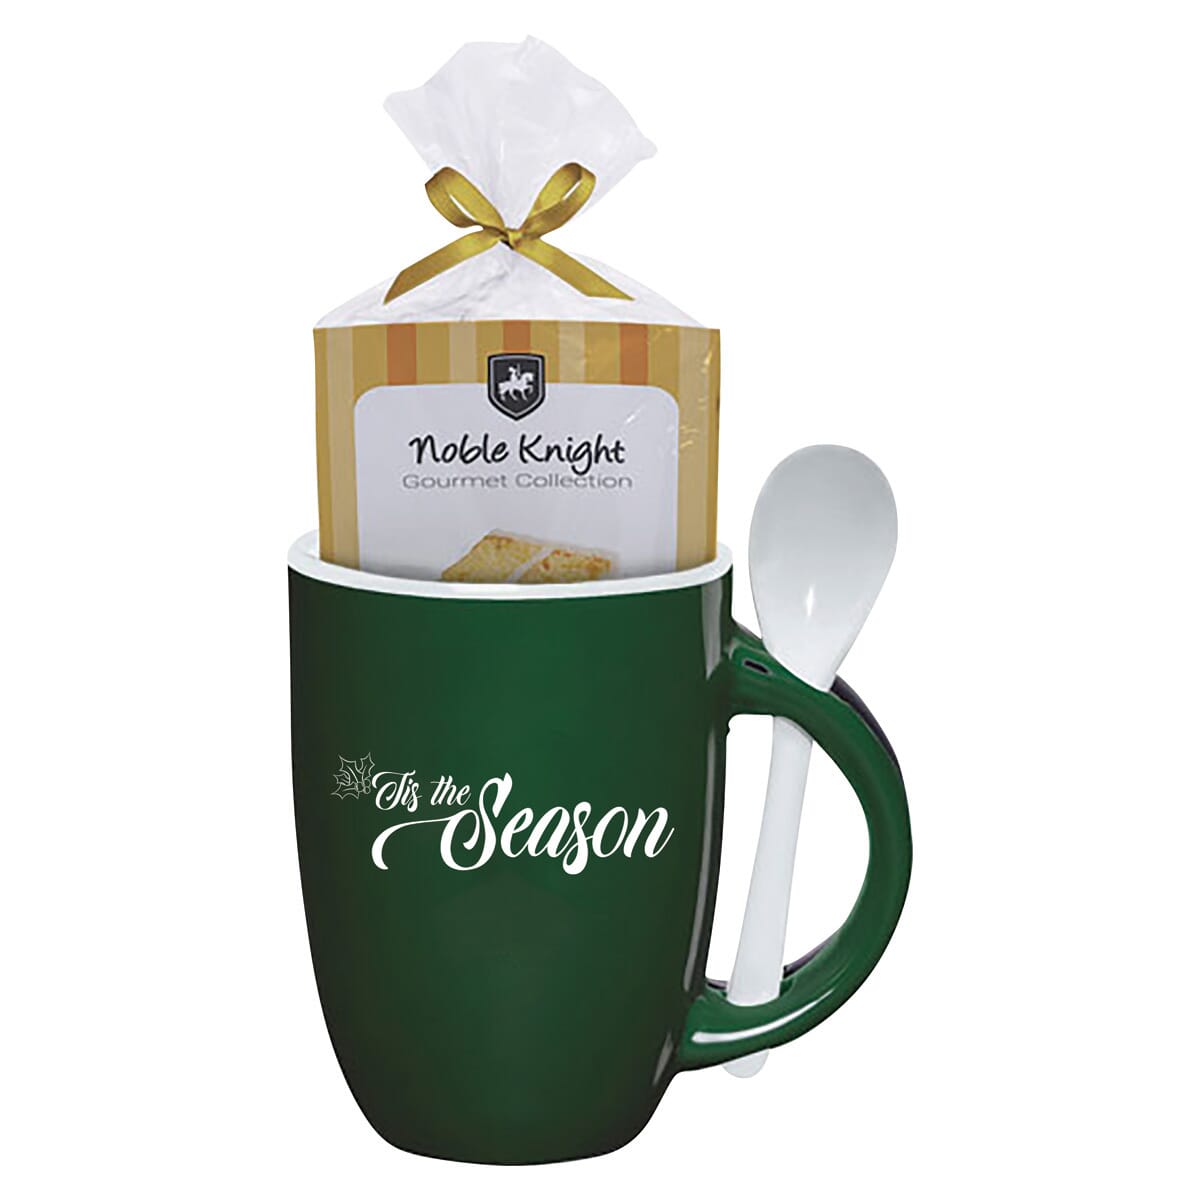 Spoon and mug cake set with holiday saying